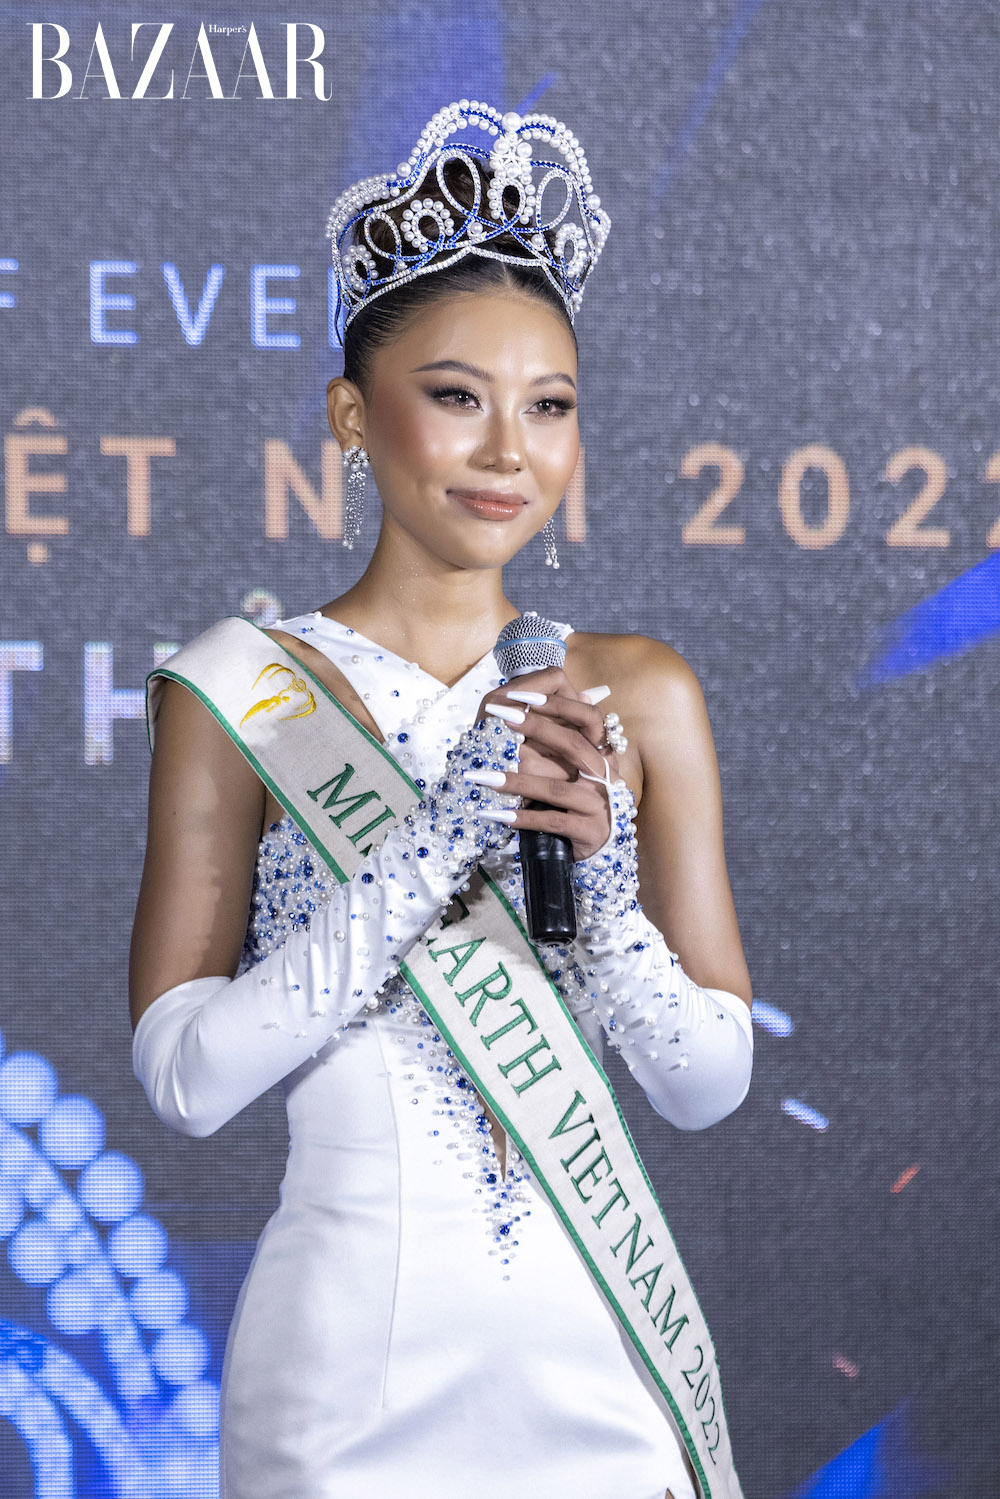 Á hậu Thạch Thu Thảo đại diện Việt Nam tham dự Miss Earth 2022